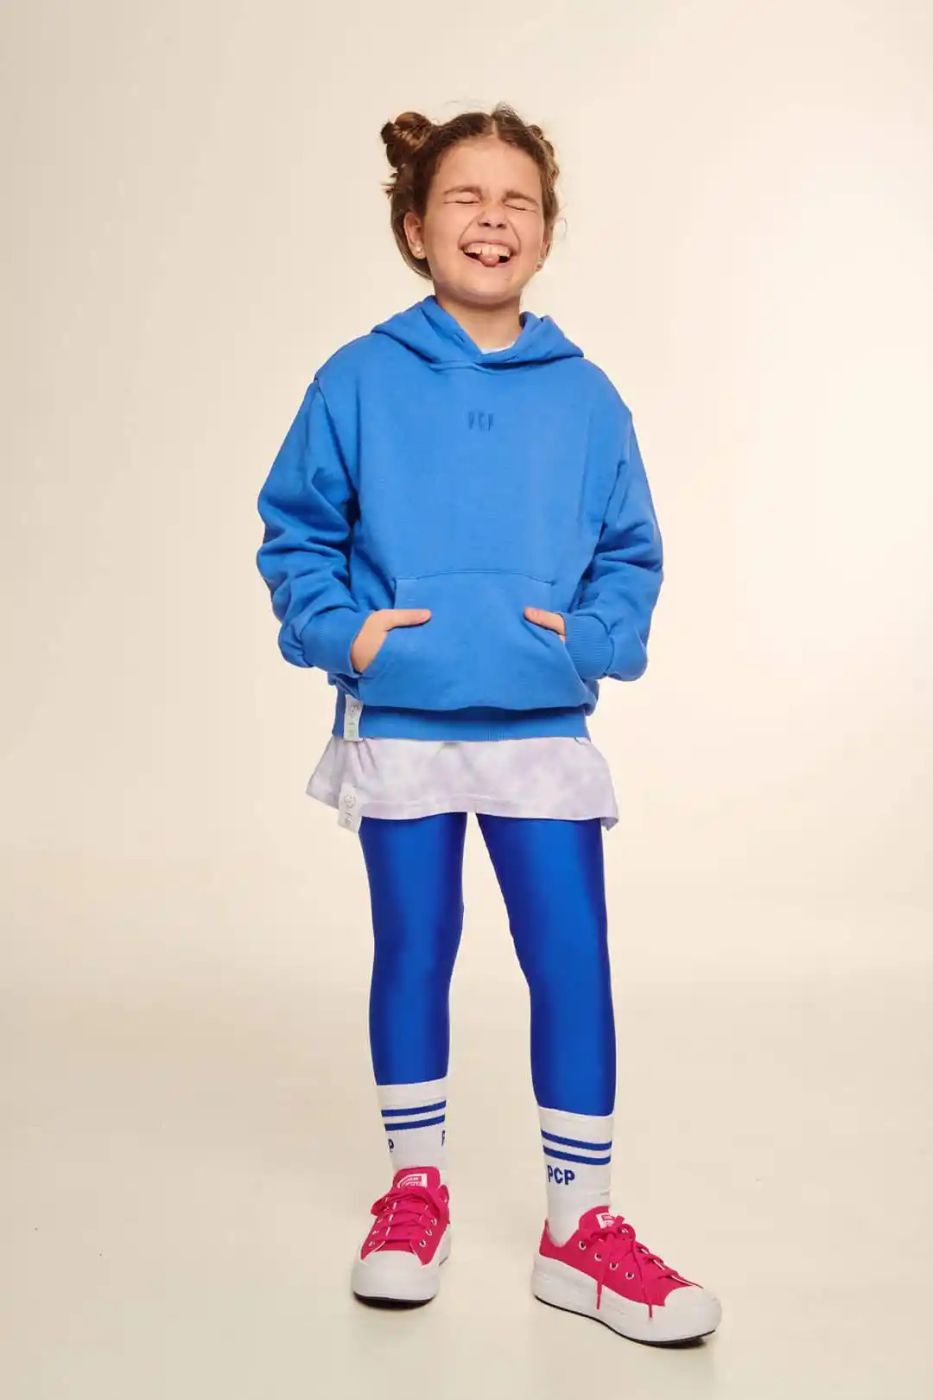 PCP Clothing Kiddo Jacqueline Shiny Blue Leggings